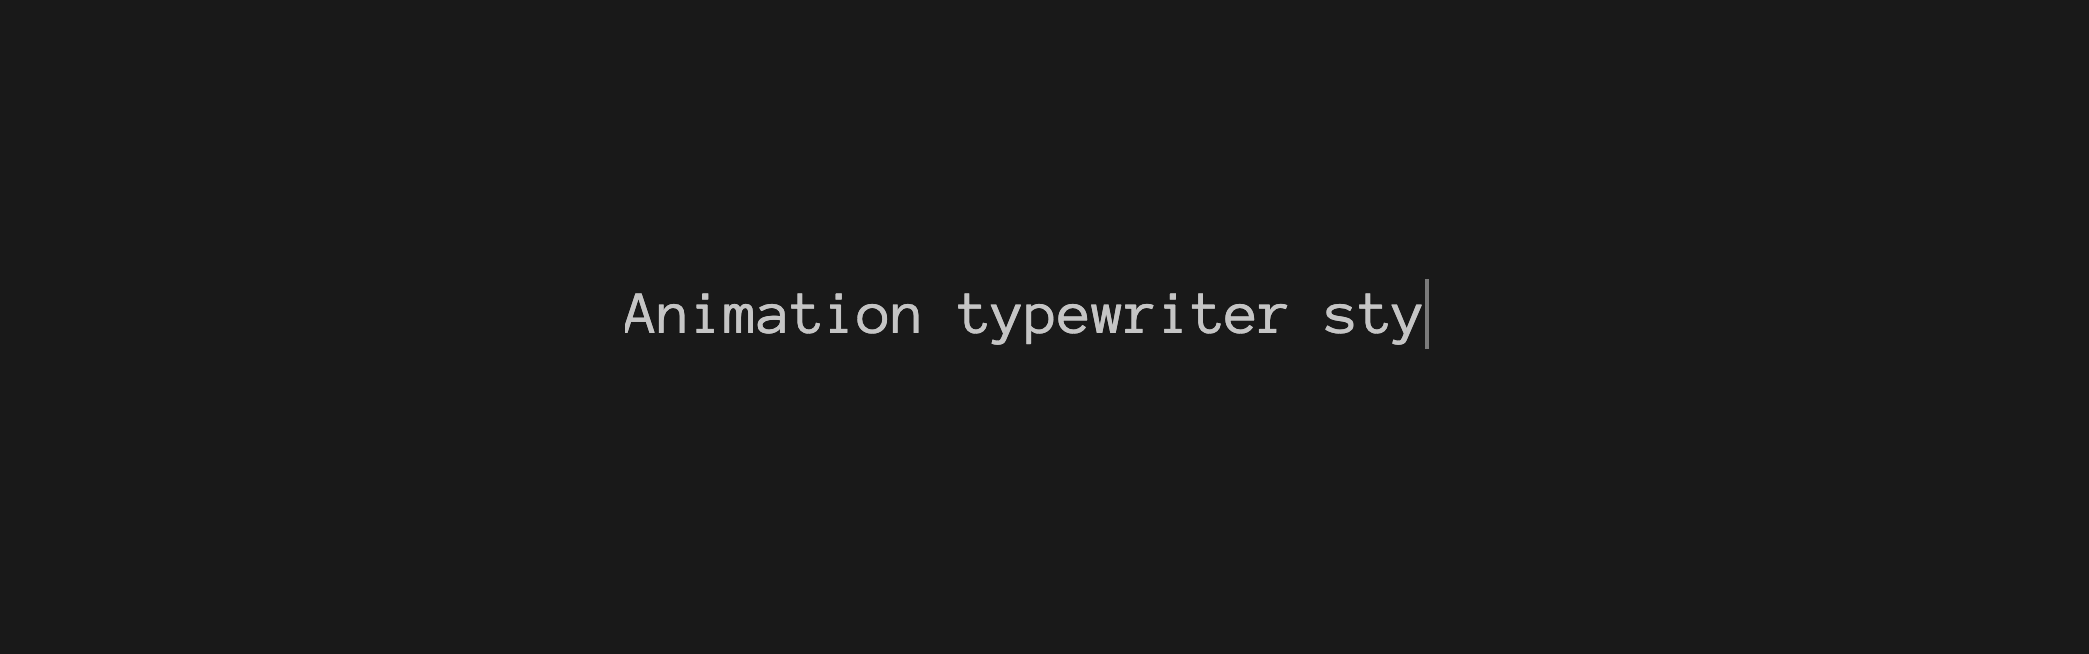 Typewriter Animation CSS